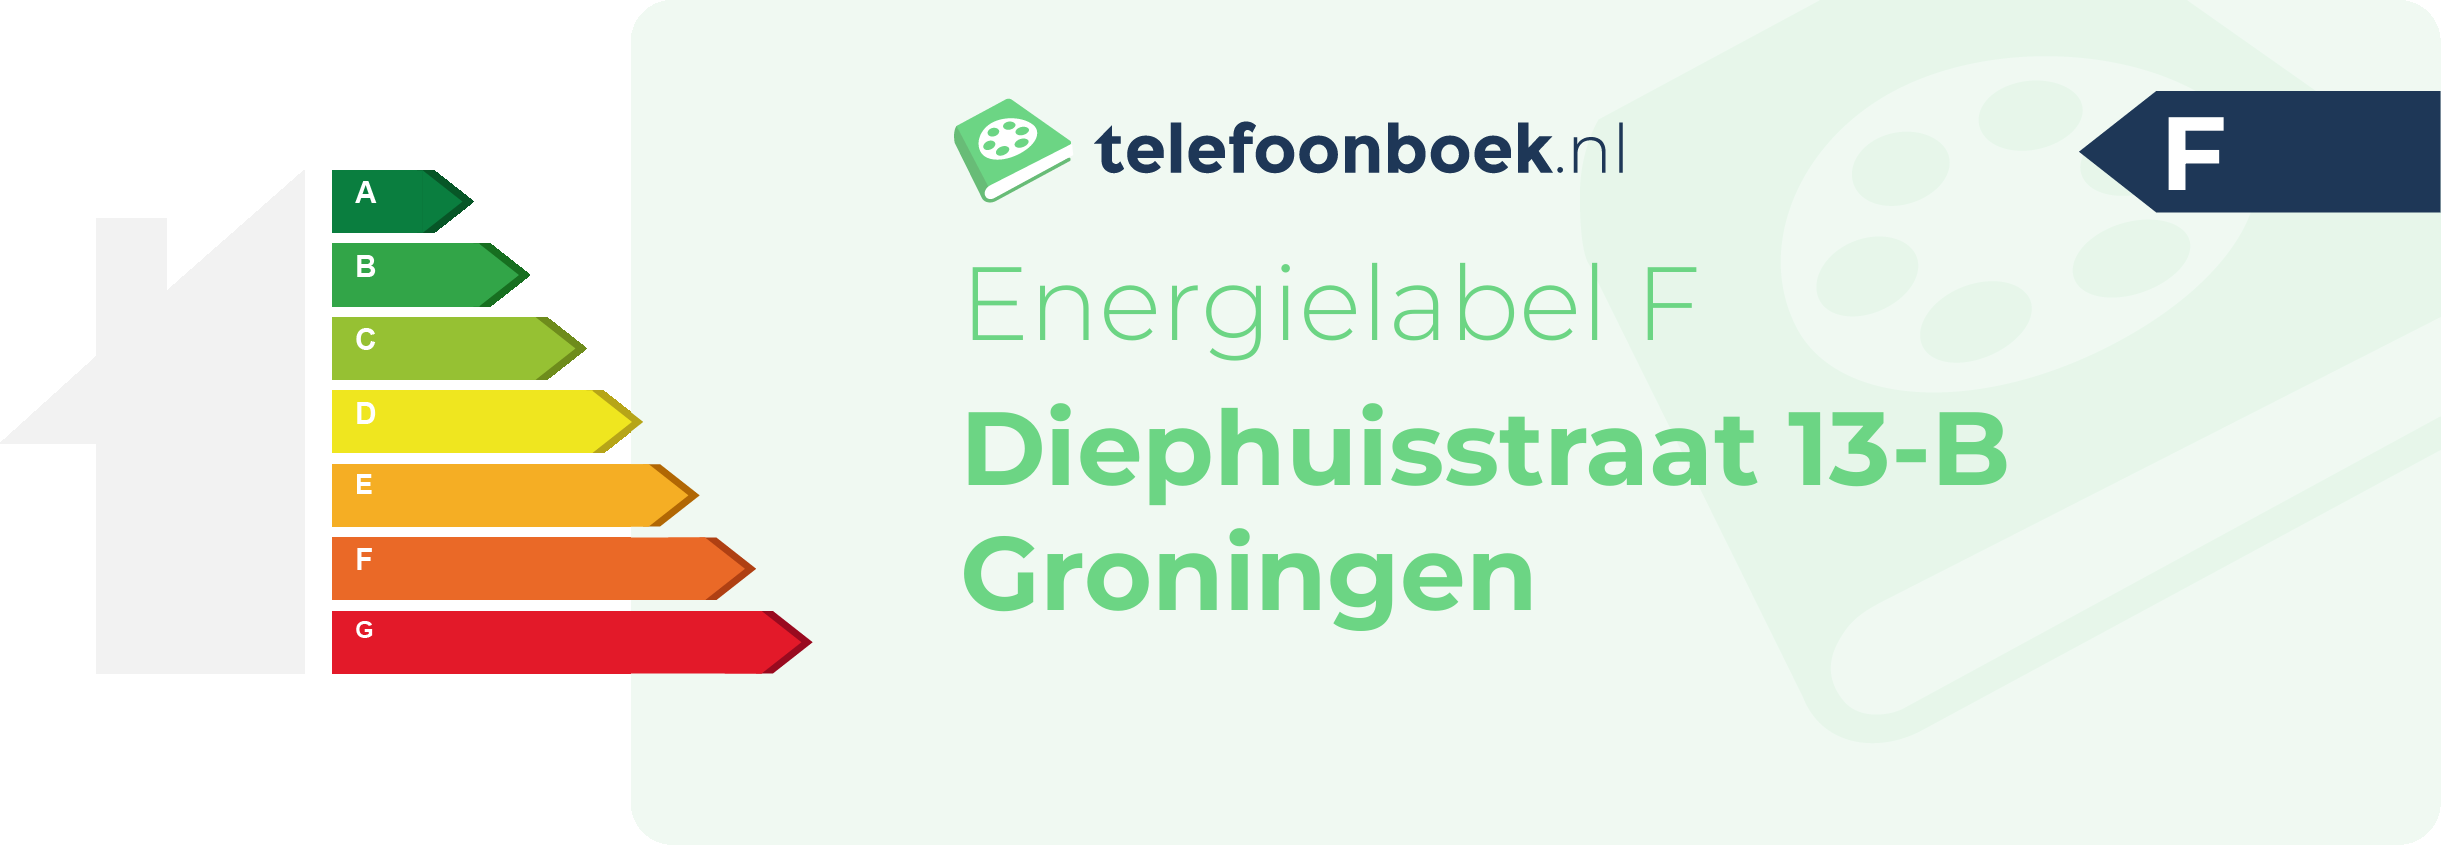 Energielabel Diephuisstraat 13-B Groningen